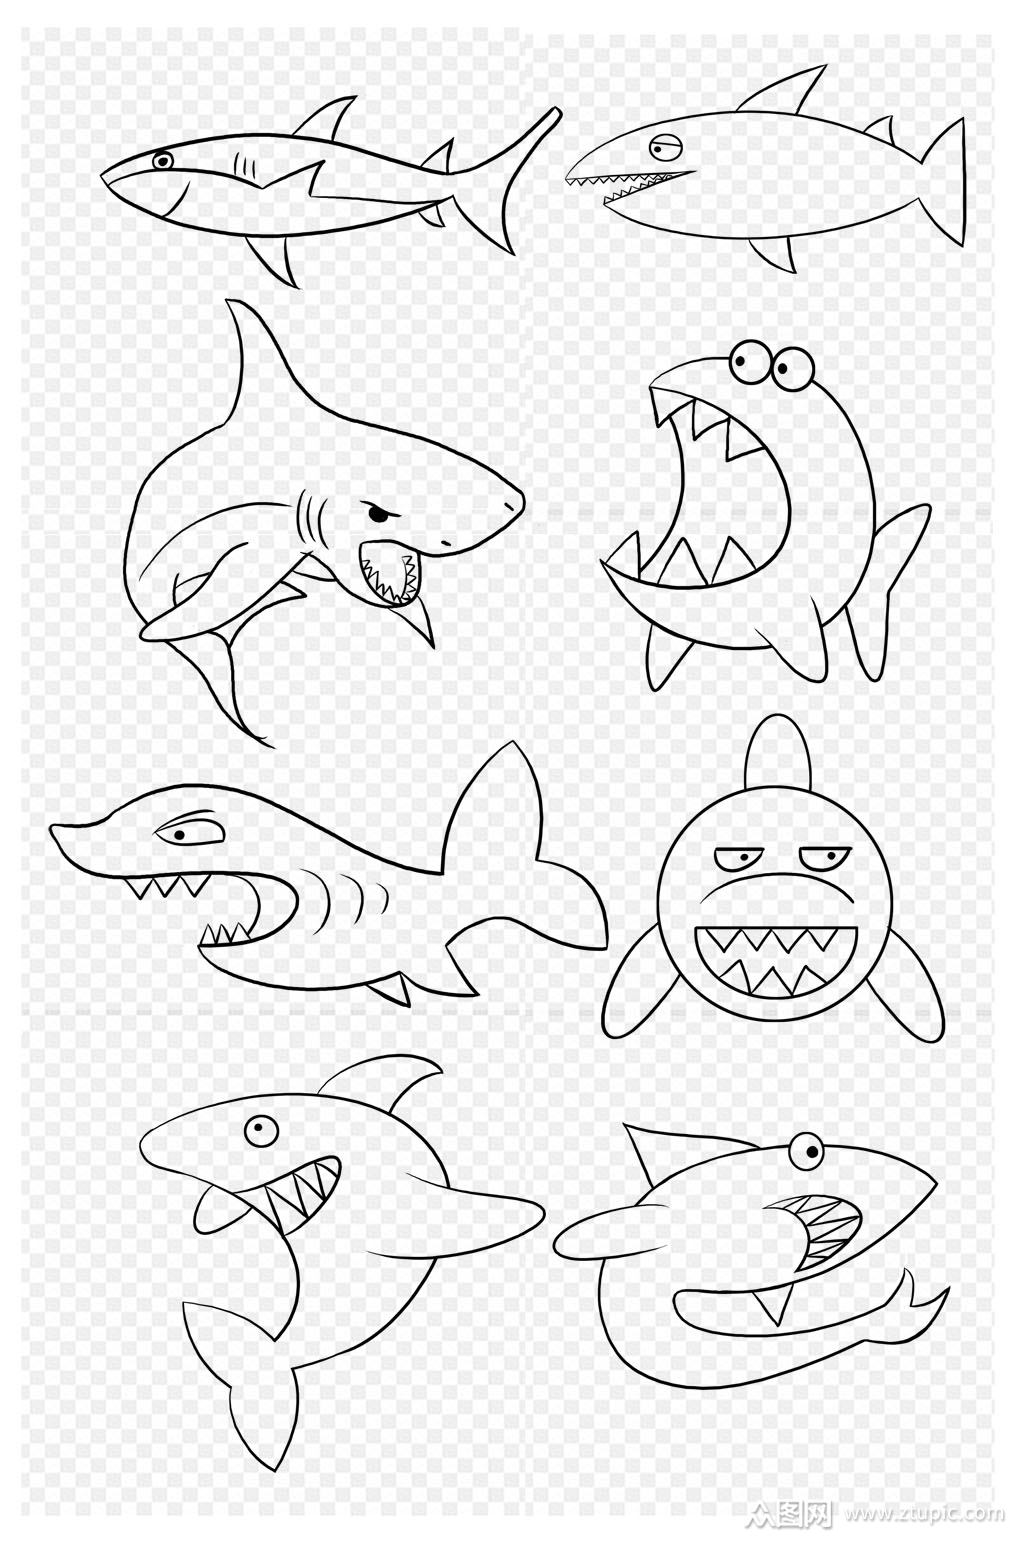 鲨鱼简笔画画法图片步骤💛巧艺网